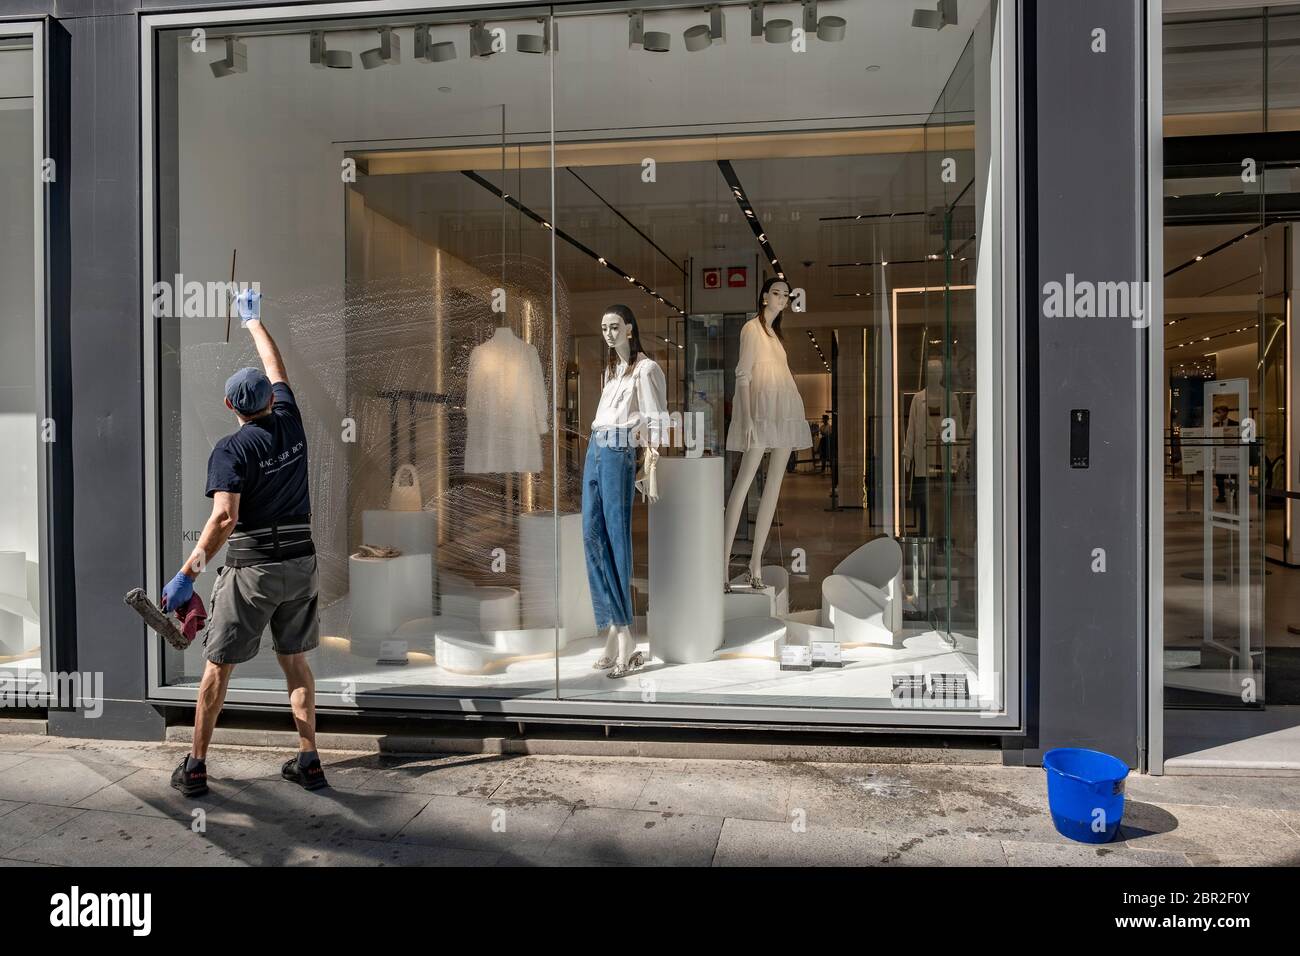 Un hombre del servicio de limpieza privada Zara / Inditex es visto limpiar  una ventana de la tienda la pequeña y mediana empresa minorista en Barcelona  se prepara para gestionar las ventas